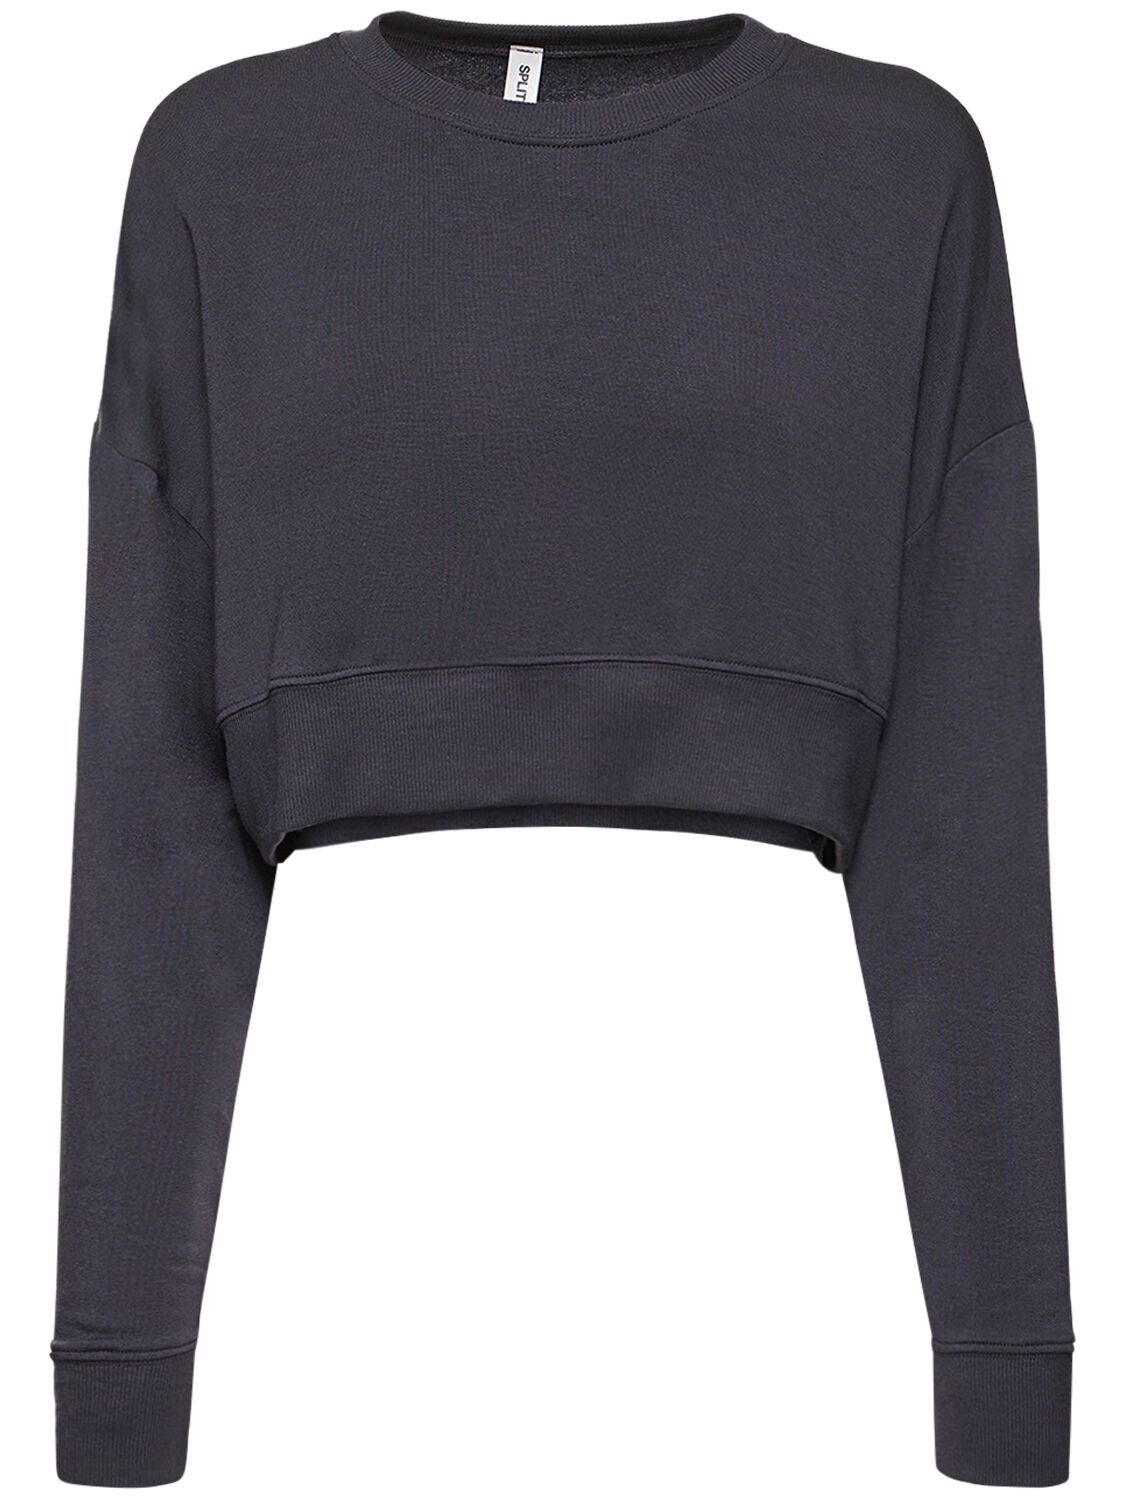 Shop Splits59 Noah Modal Blend Crop Sweatshirt In Black